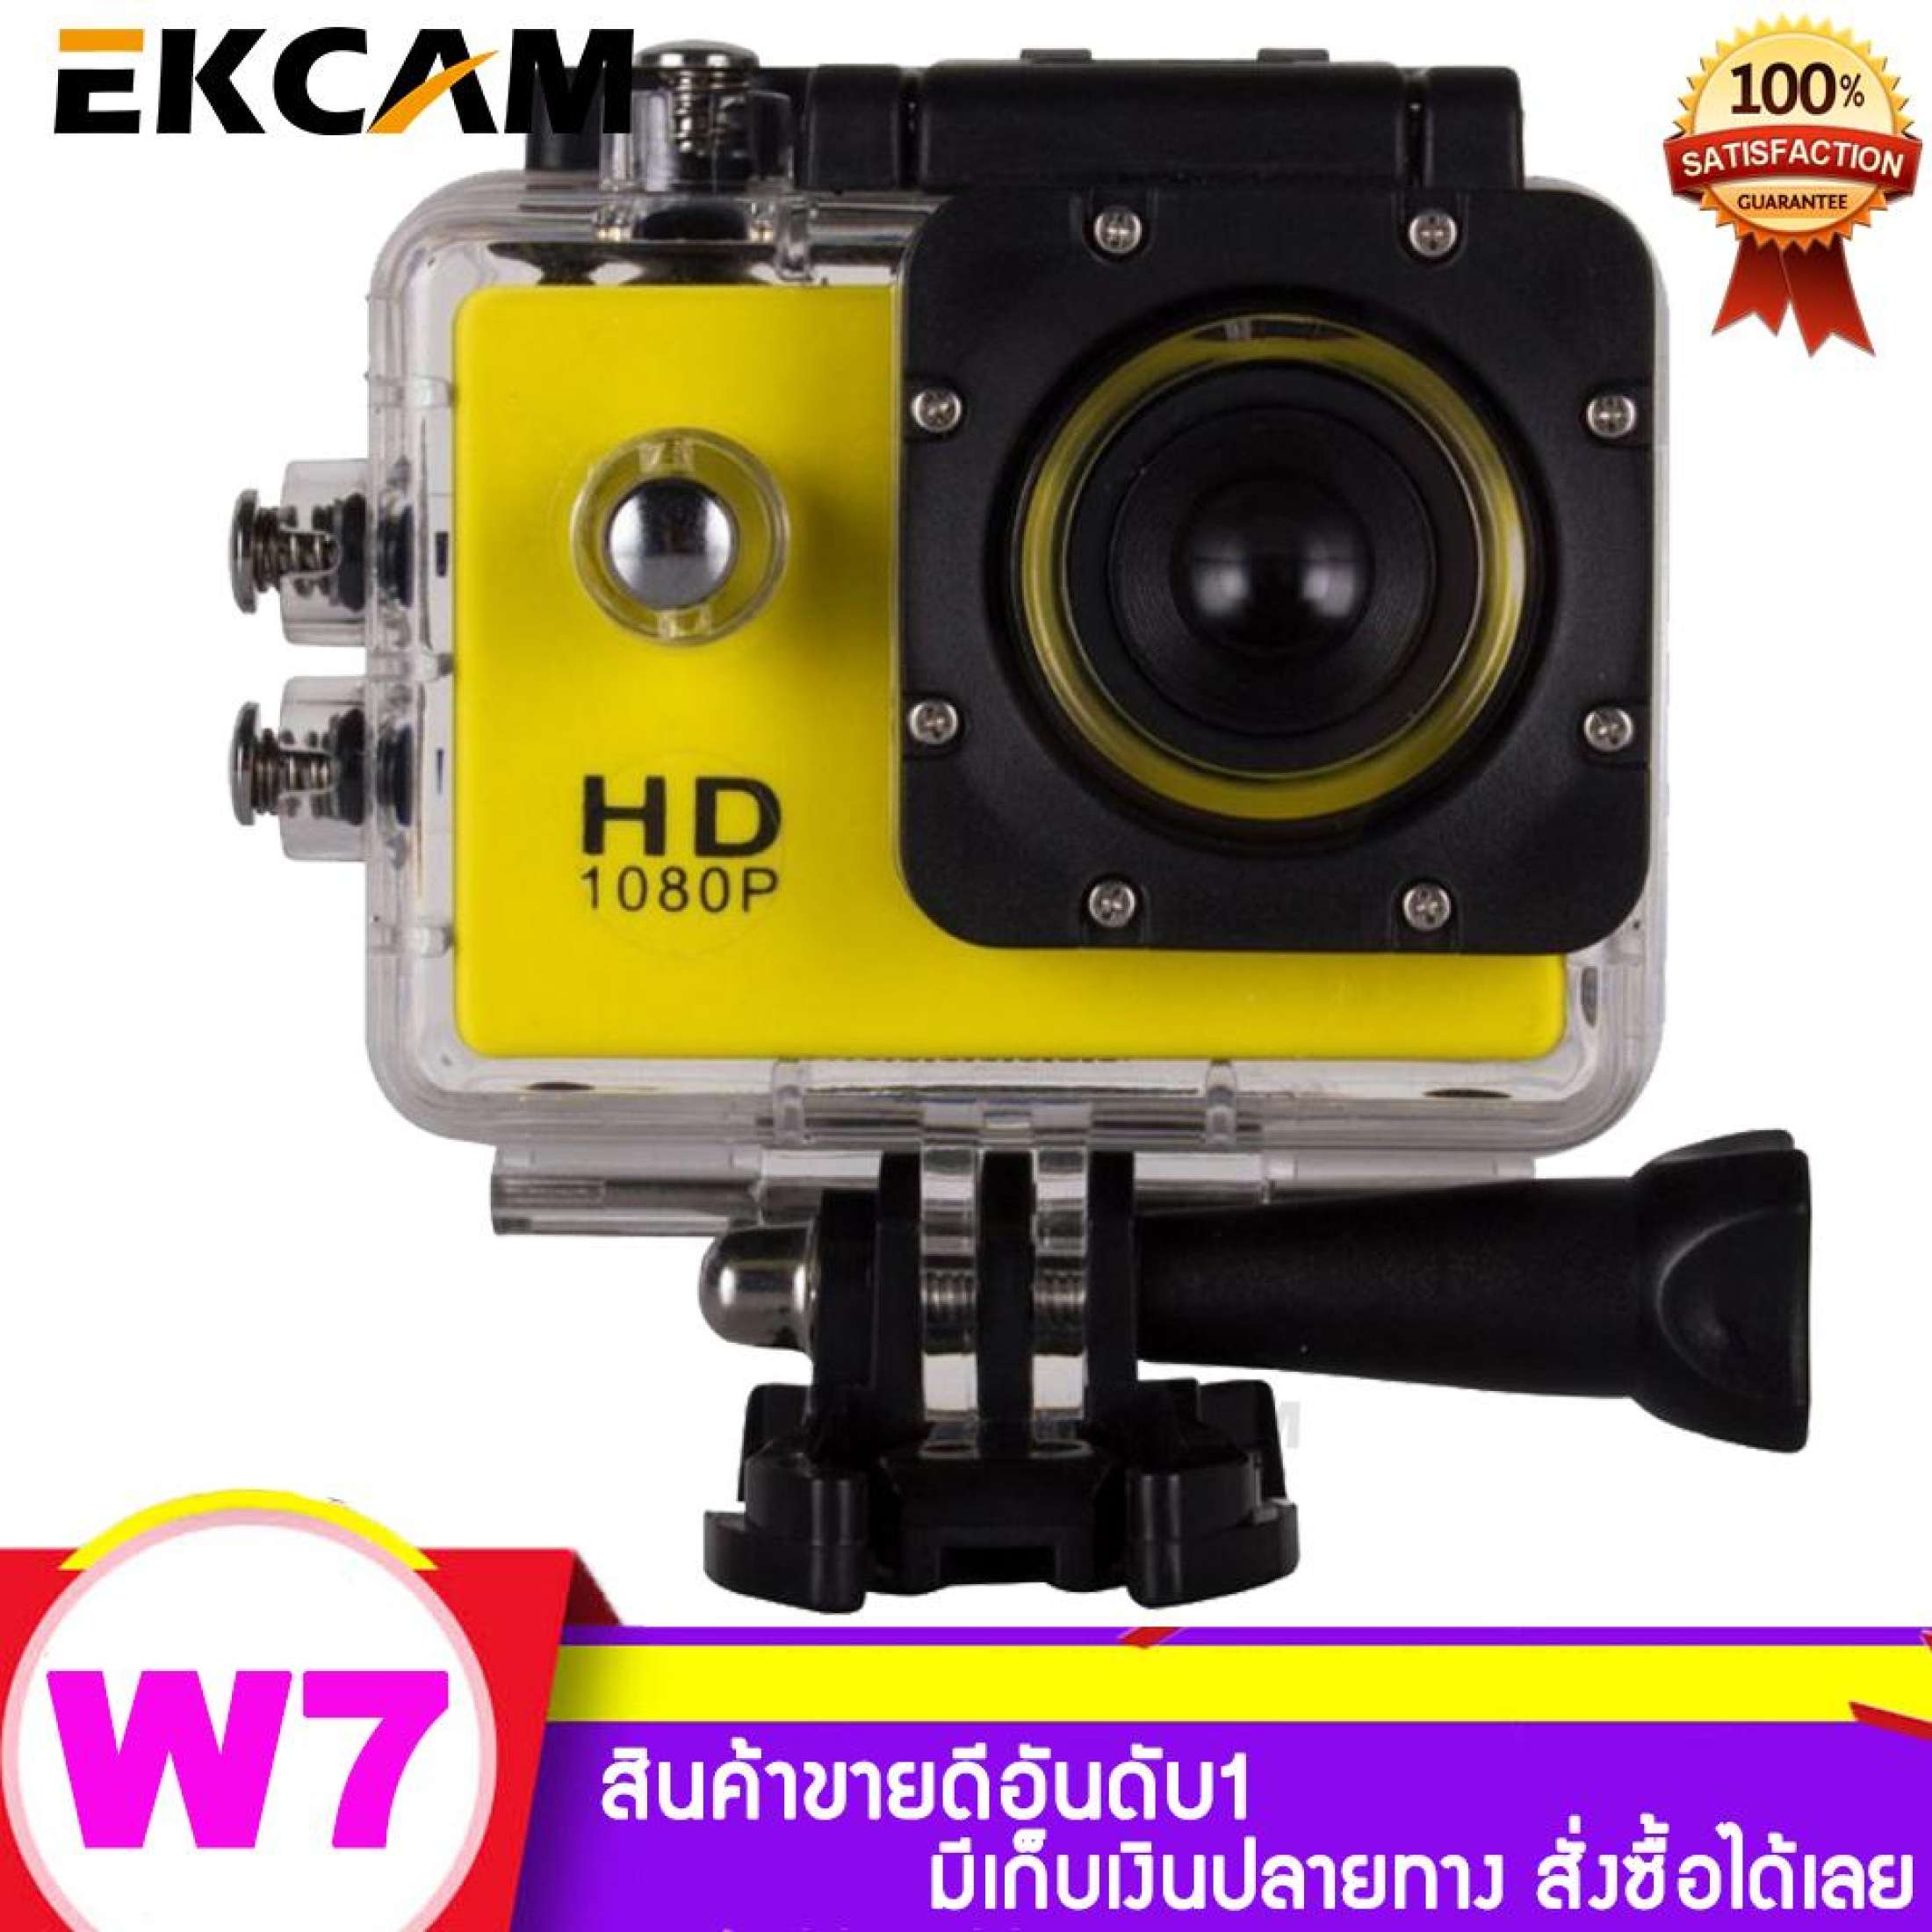 กล้องติดหมวก กล้องมินิ ถ่ายใต้น้ำ กล้องกันน้ำ กล้องรถแข่ง กล้องแอ็คชั่น ขับเดินทาง ดำน้ำ กันน้ำ กันสั่น มั่นคง กล้อง Sport Action Camera 1080P NoWifi